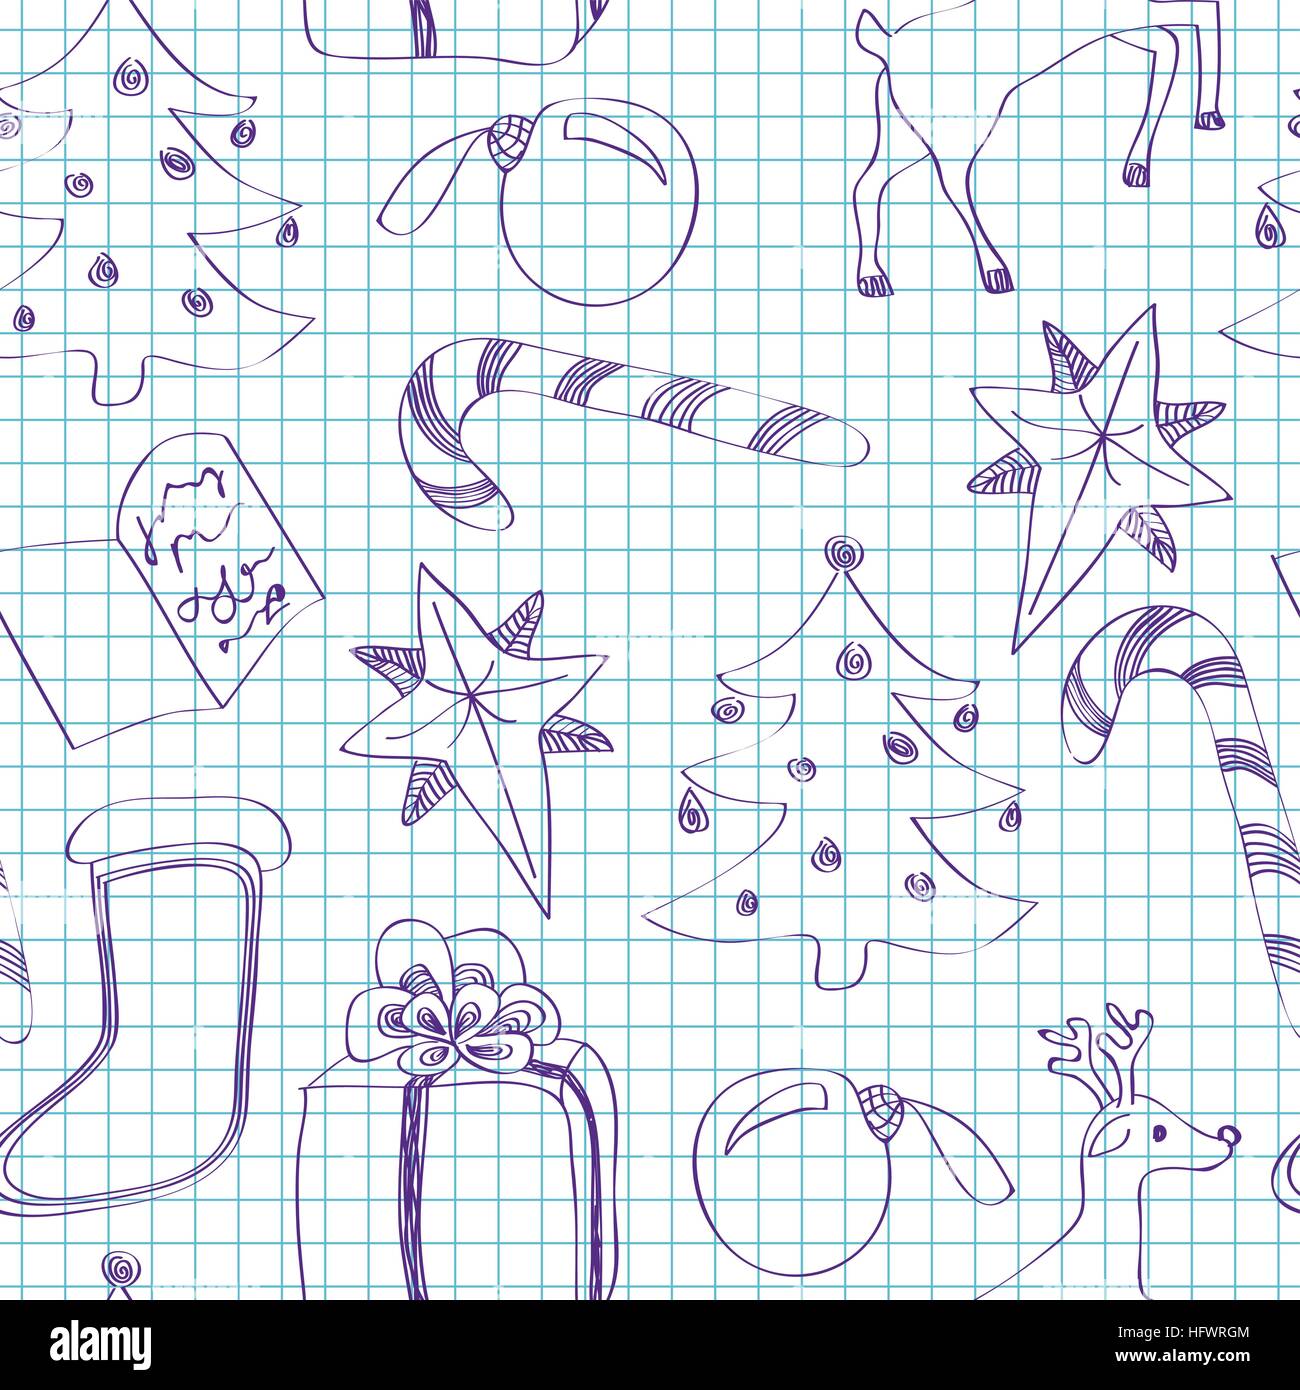 Nahtlose Kind skizziert Weihnachten Muster auf kariertem Papier  Stock-Vektorgrafik - Alamy